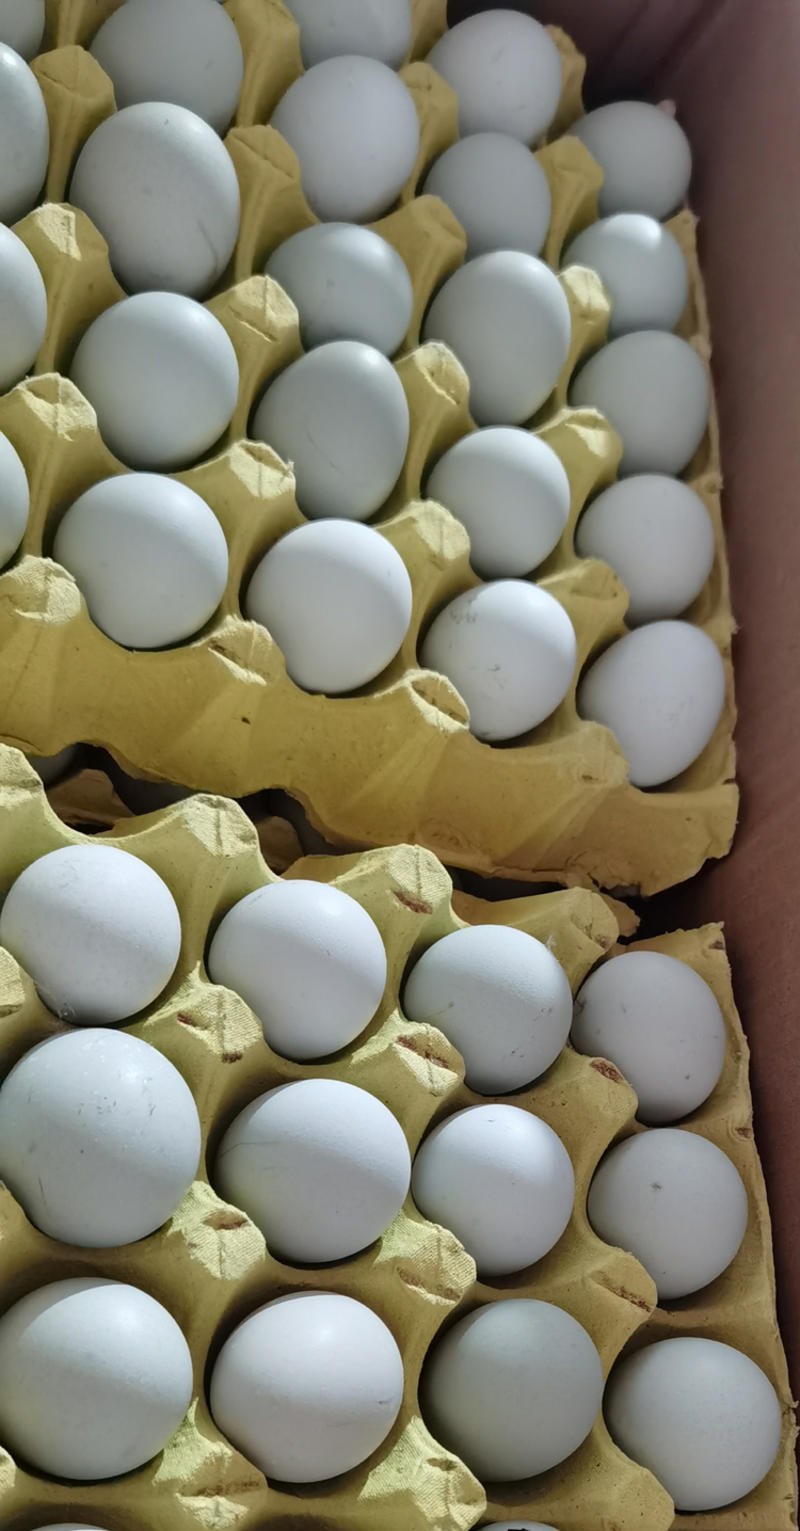 【整车270件起】绿壳蛋乌鸡蛋360枚/箱净重30-35